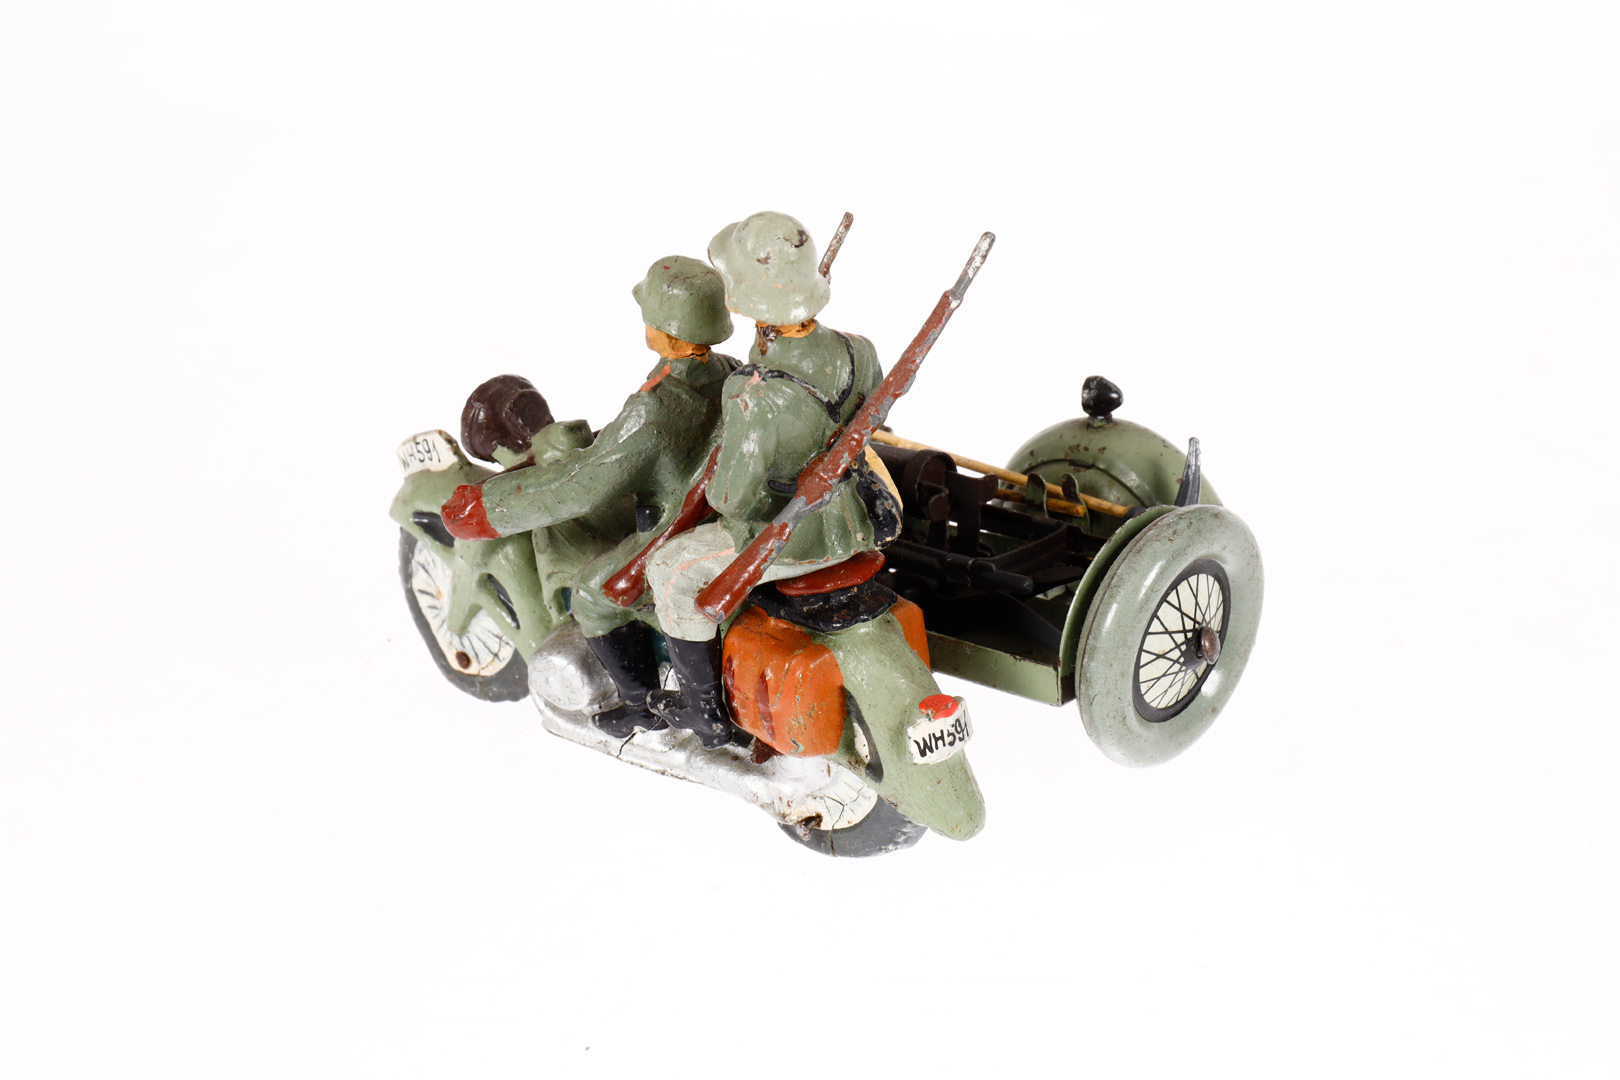 Motorrad mit MG-Wagen und 2 Soldaten, Blech/Masse, HL, L 10,5, Z 3 - Image 2 of 2